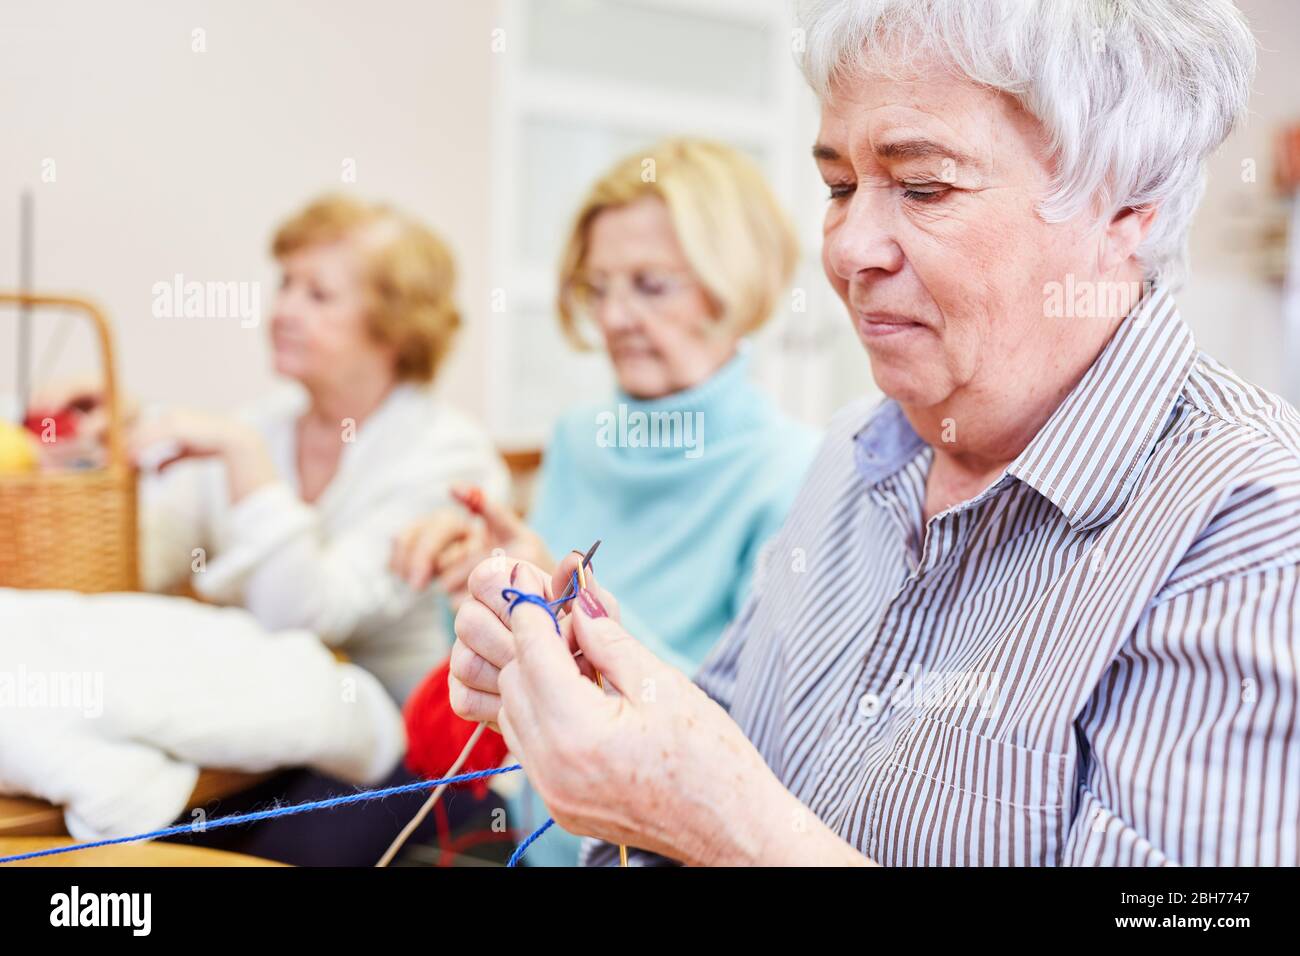 Mujer anciana crocheting en un curso de artesanía como hobby o terapia ocupacional Foto de stock